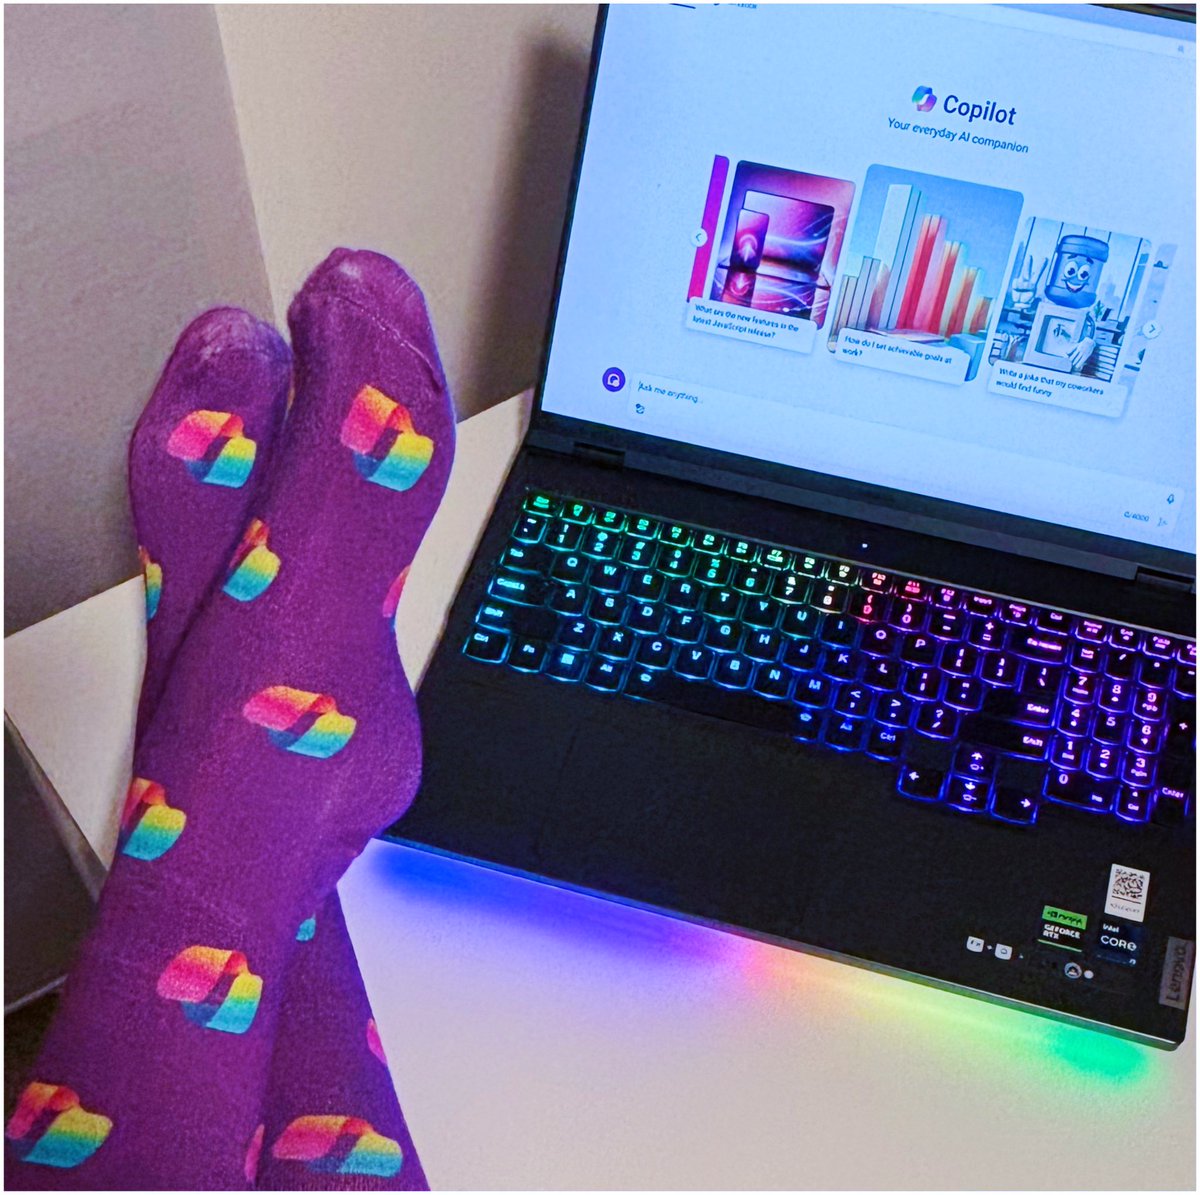 Matching socks #Microsoftcopilot
❤️🧡💛💚🩵💙💜